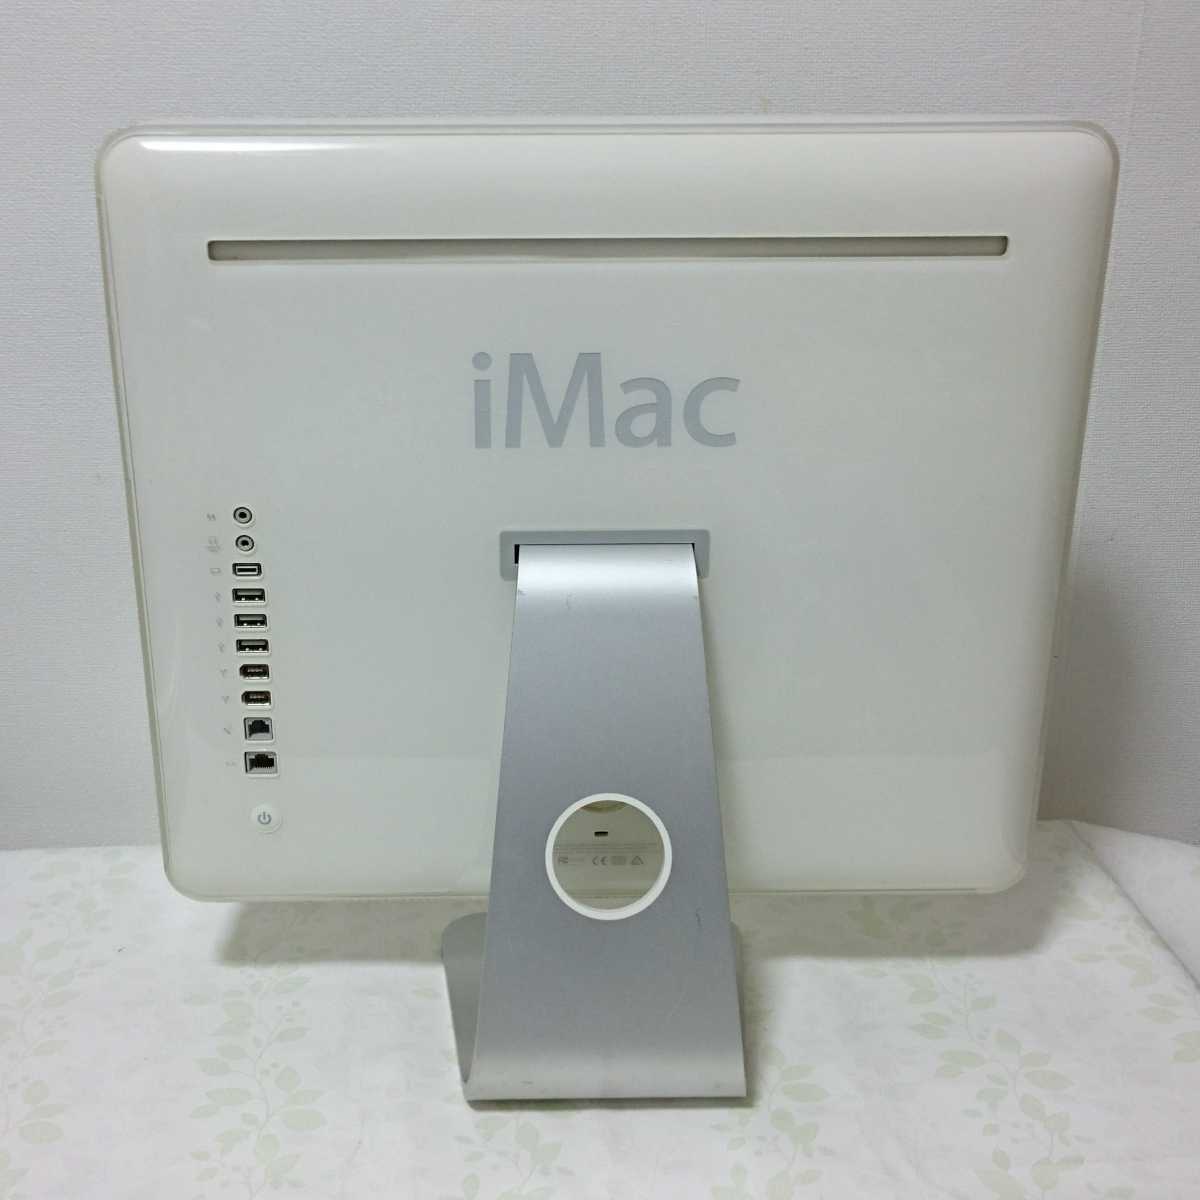 中古 動作可 ジャンク品 パソコン 一体型 iMac PC アップル APPLE 17型 現状品_画像7